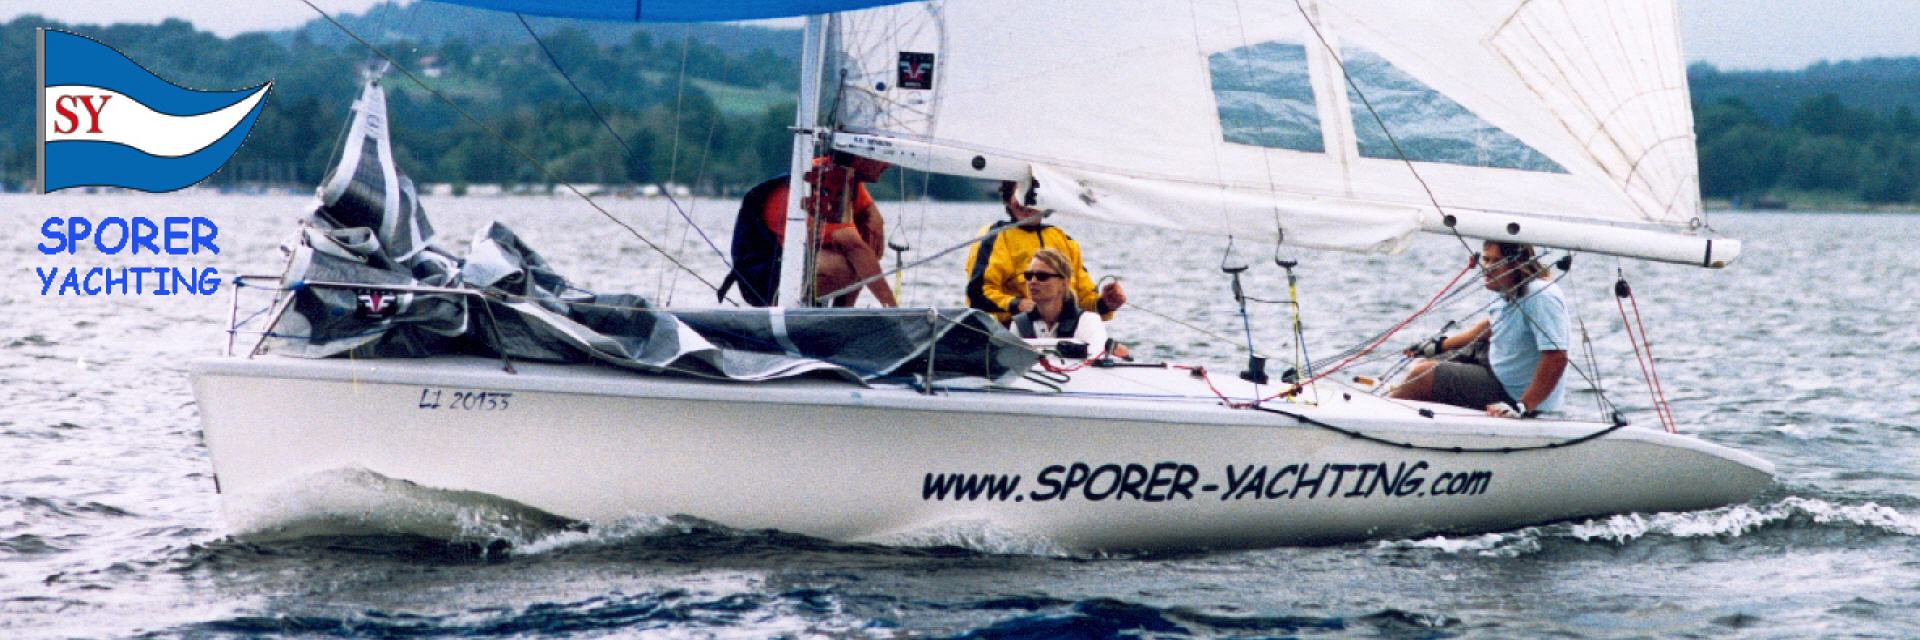 sporer yachting lochau